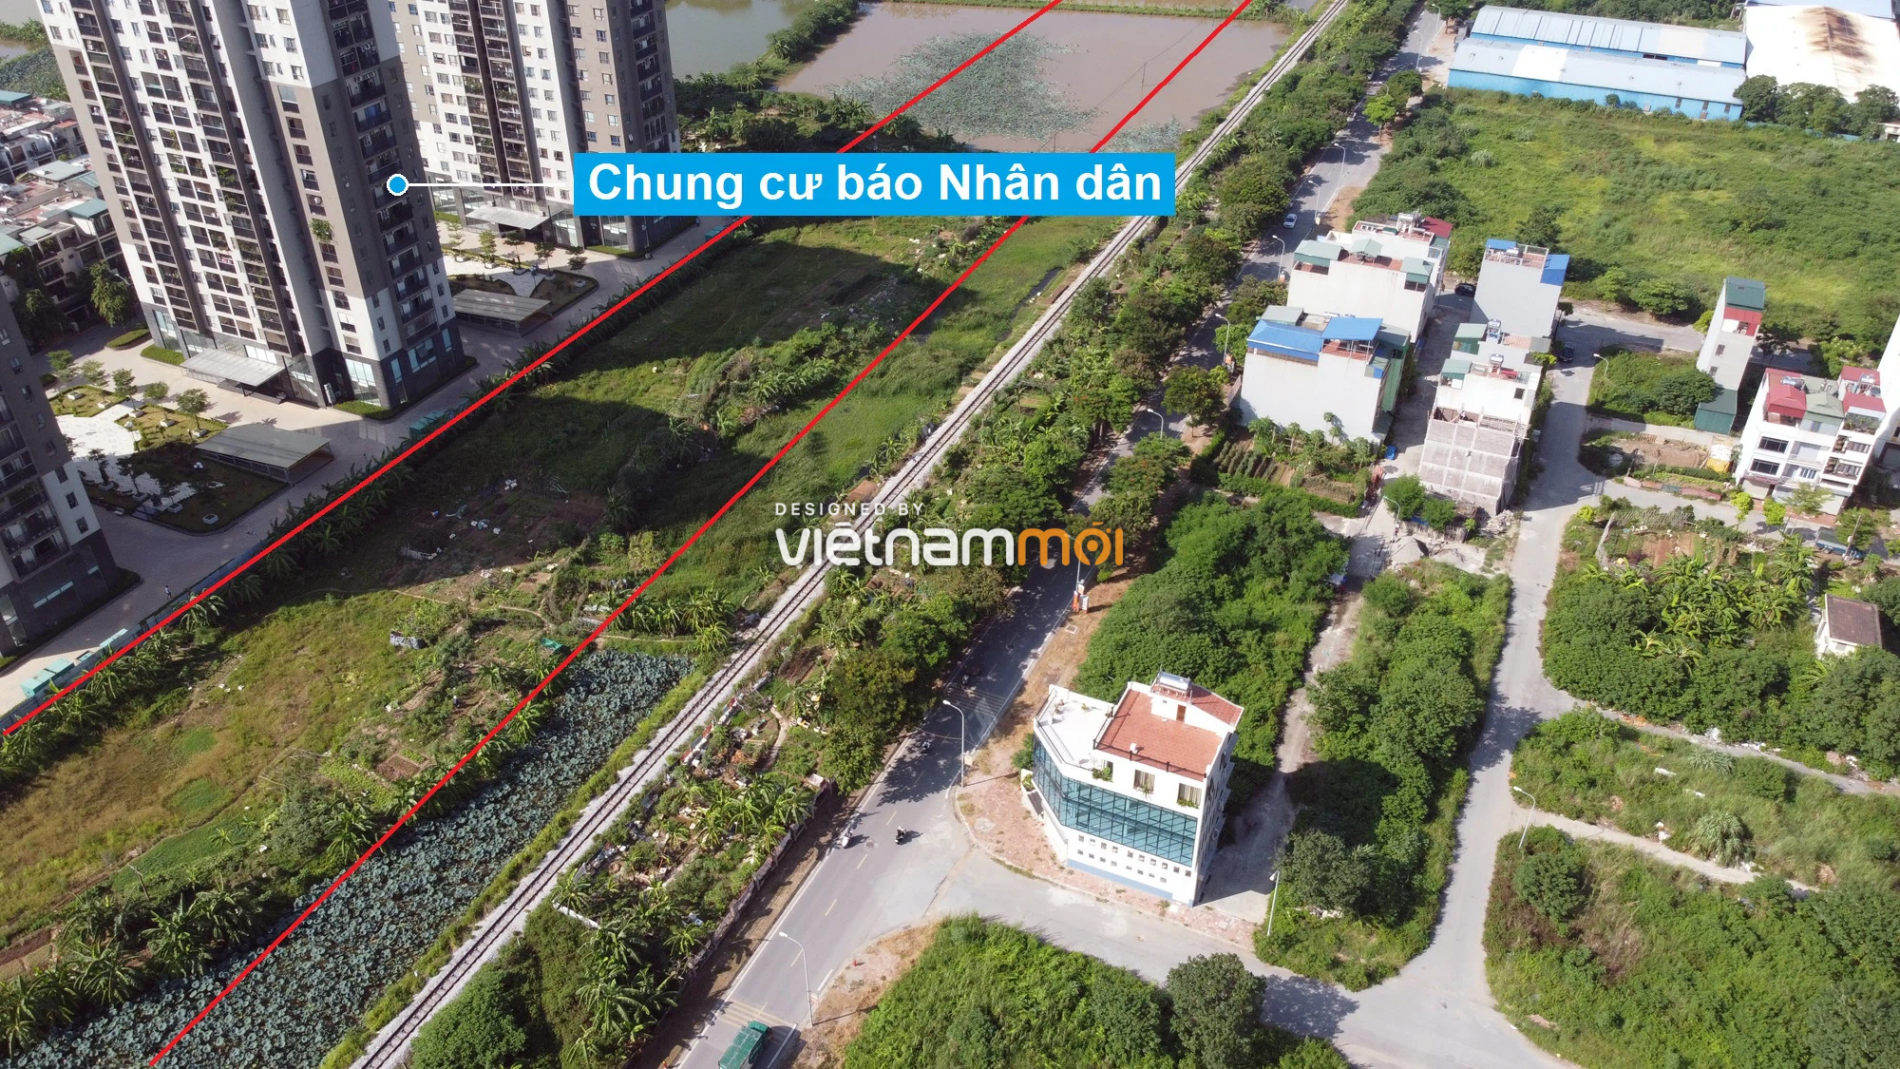 Những khu đất sắp thu hồi để mở đường ở phường Xuân Phương, Nam Từ Liêm, Hà Nội (phần 6) - Ảnh 5.